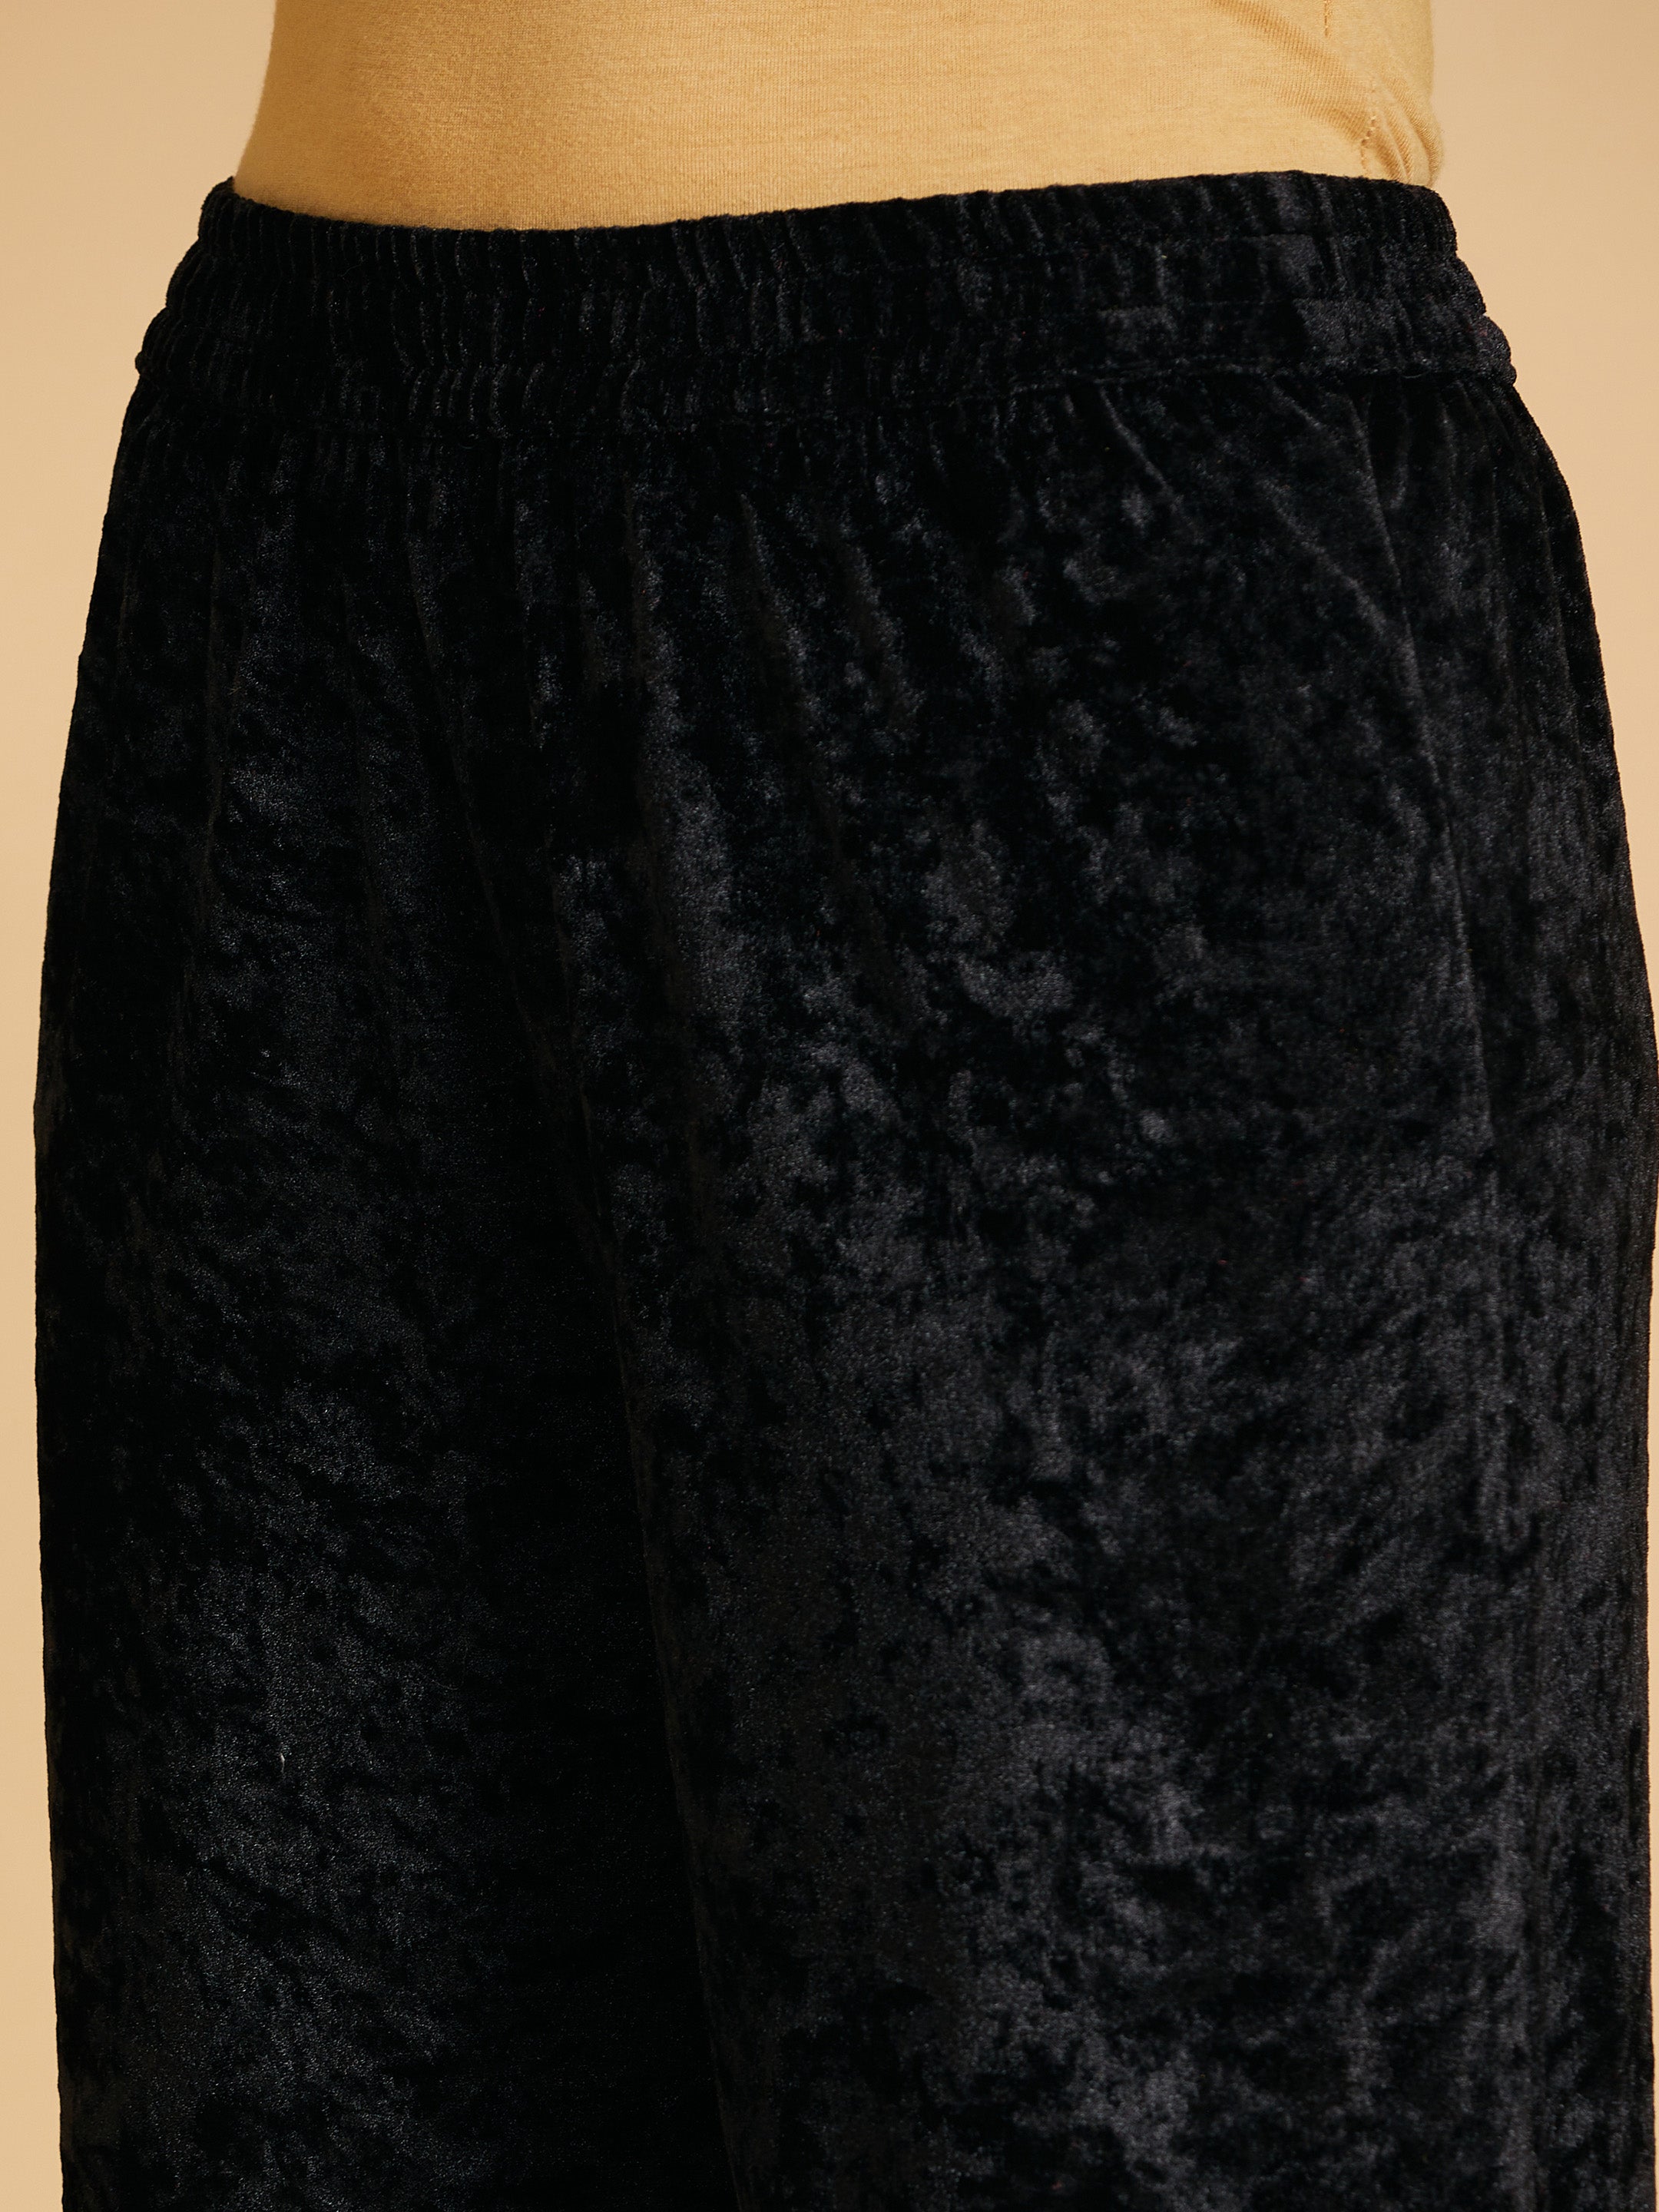 Women's Black Velvet Embroidered Straight Pants - Lyush